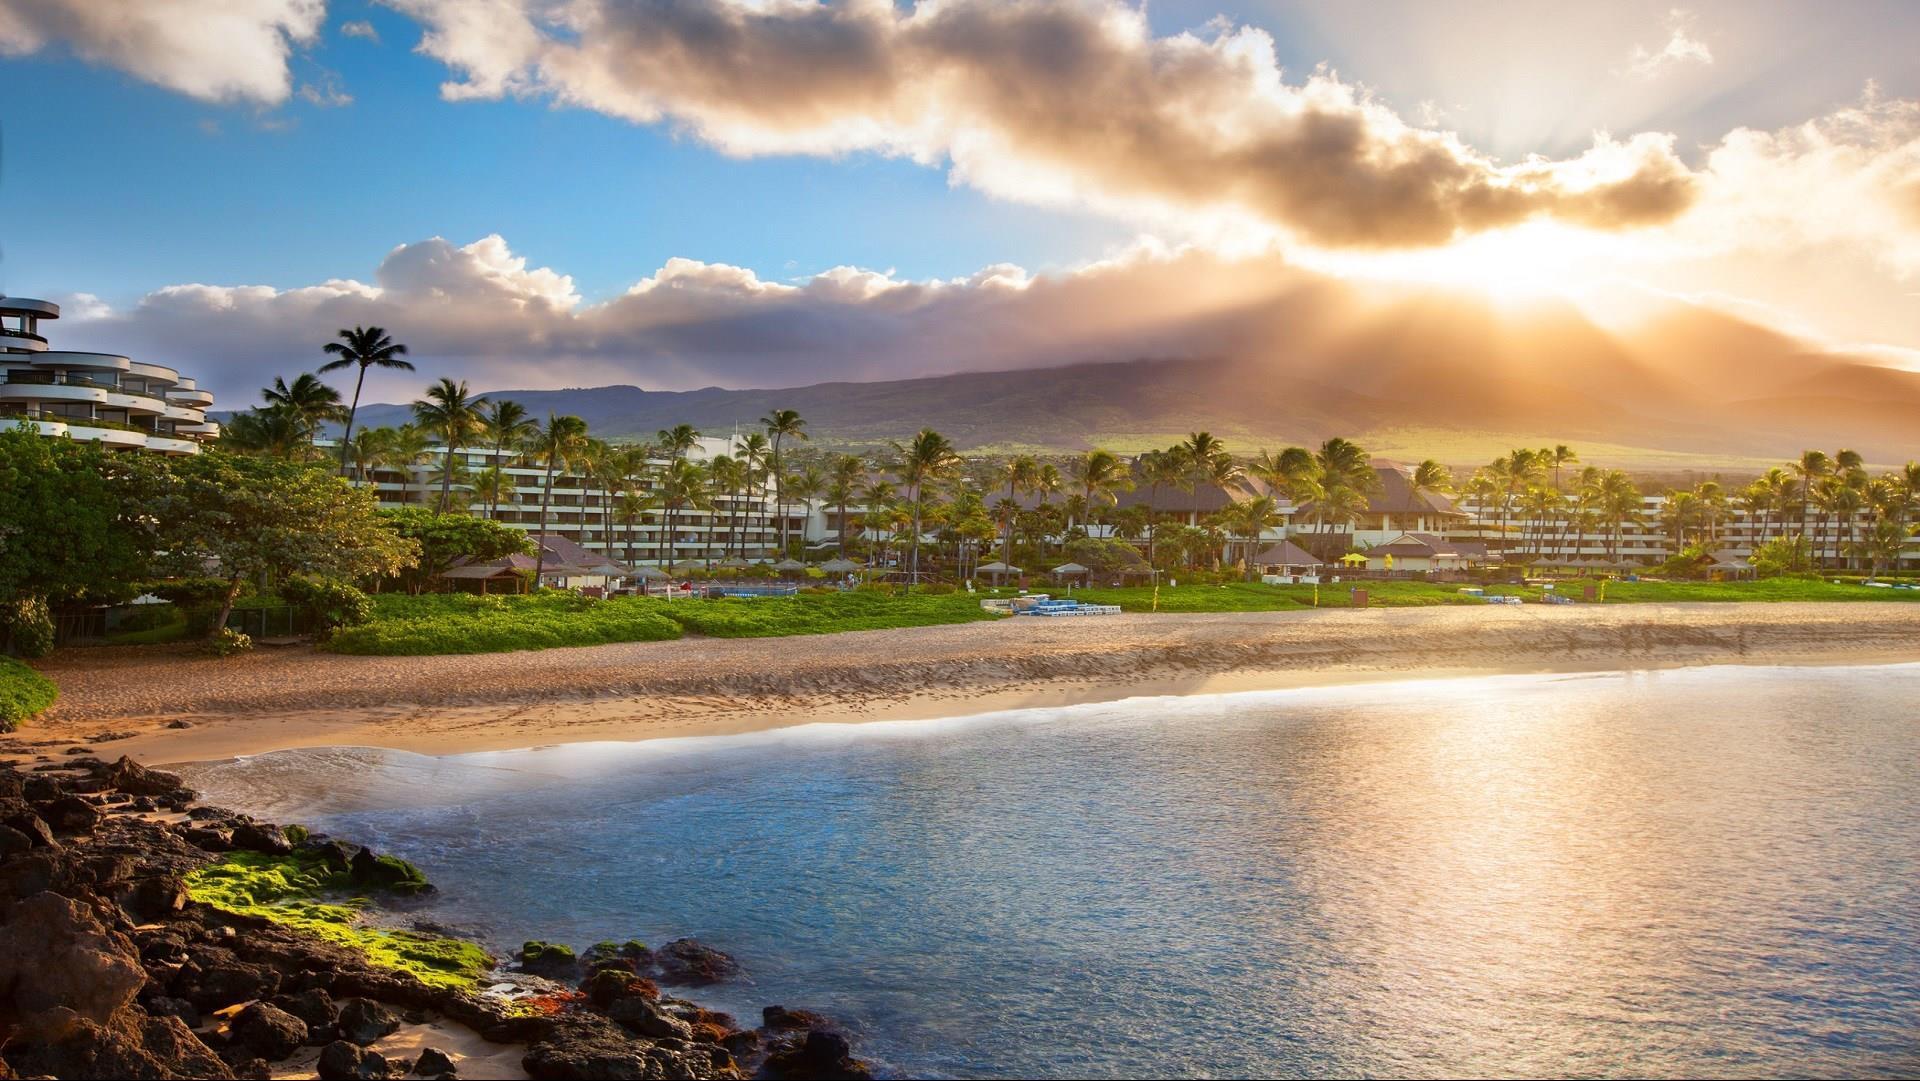 Sheraton Maui Resort & Spa in Maui, HI